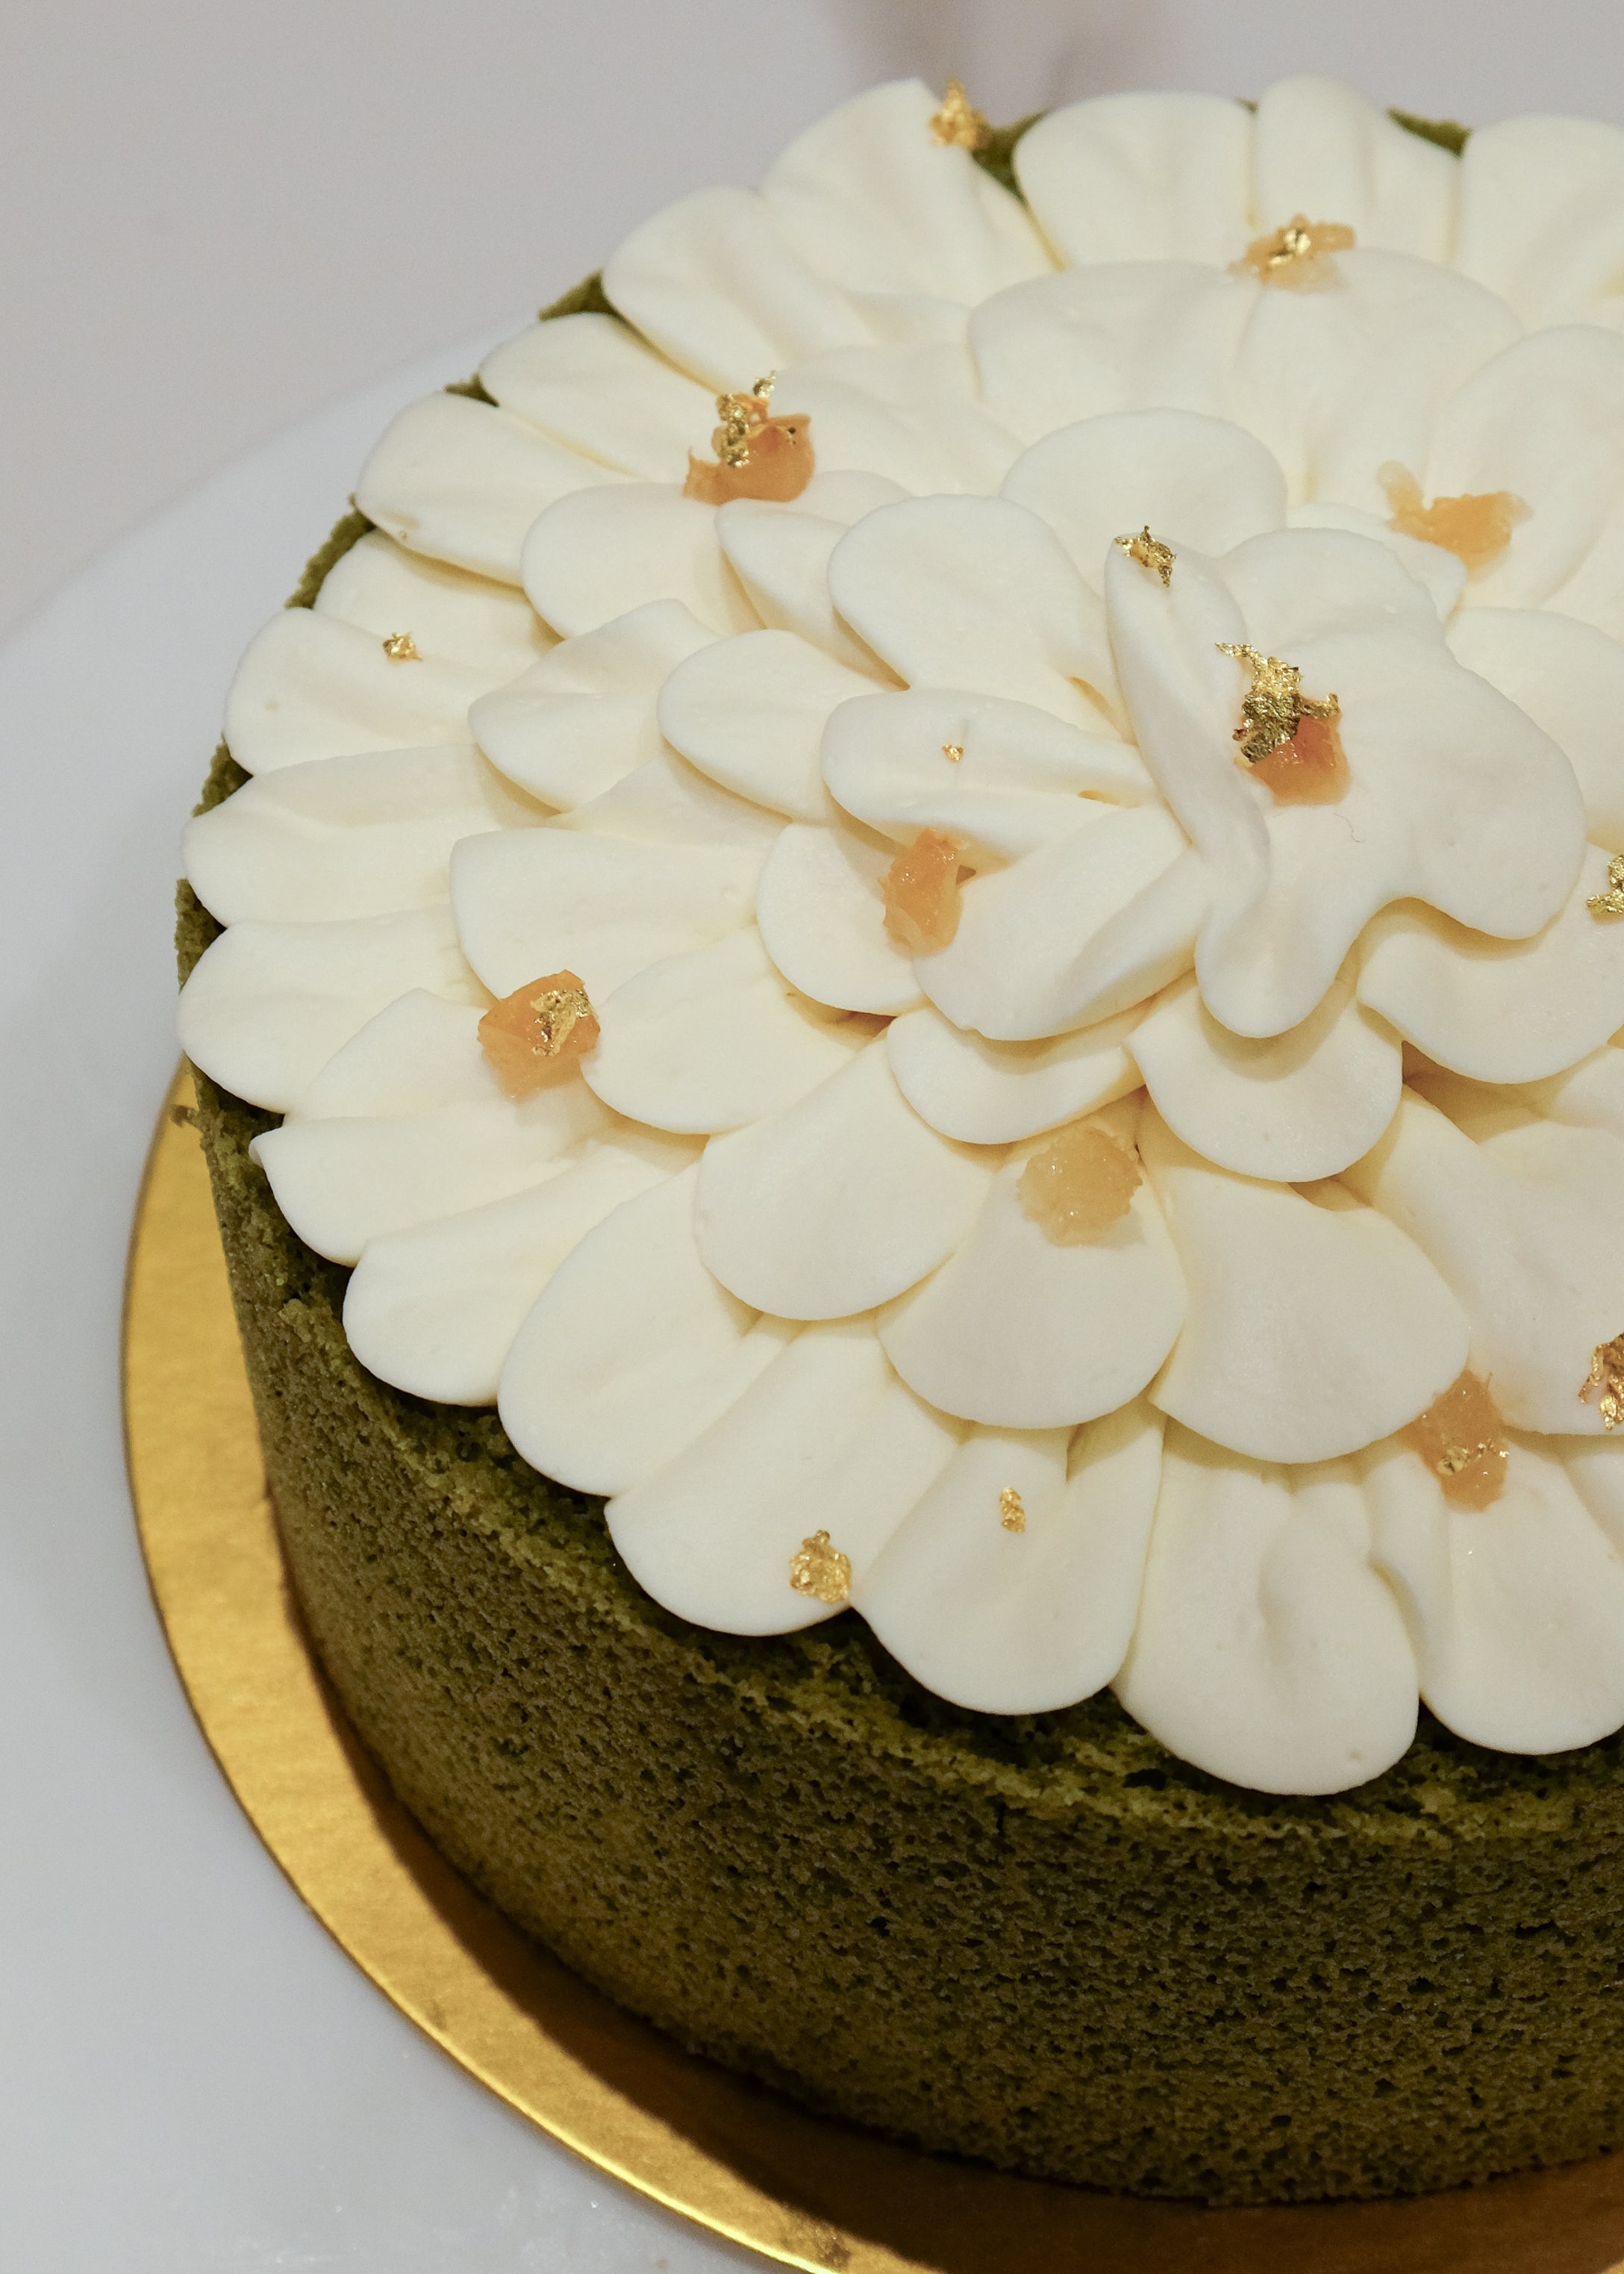 Matcha Lemon Cake